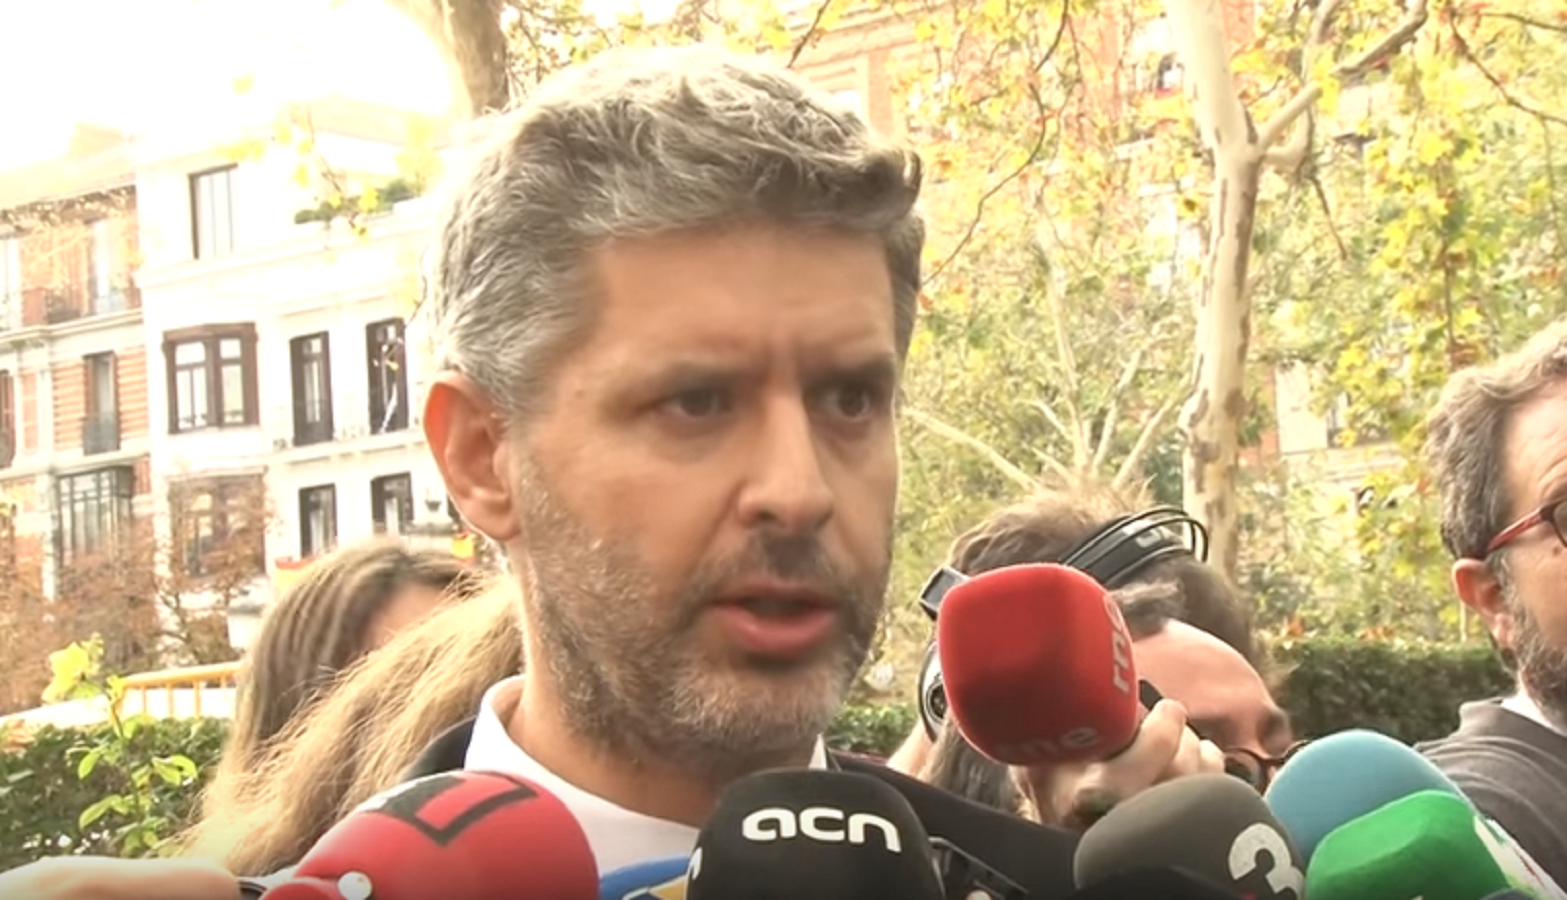 L’advocat de Junqueras i dels consellers d’ERC: “Els trauré d'allà”